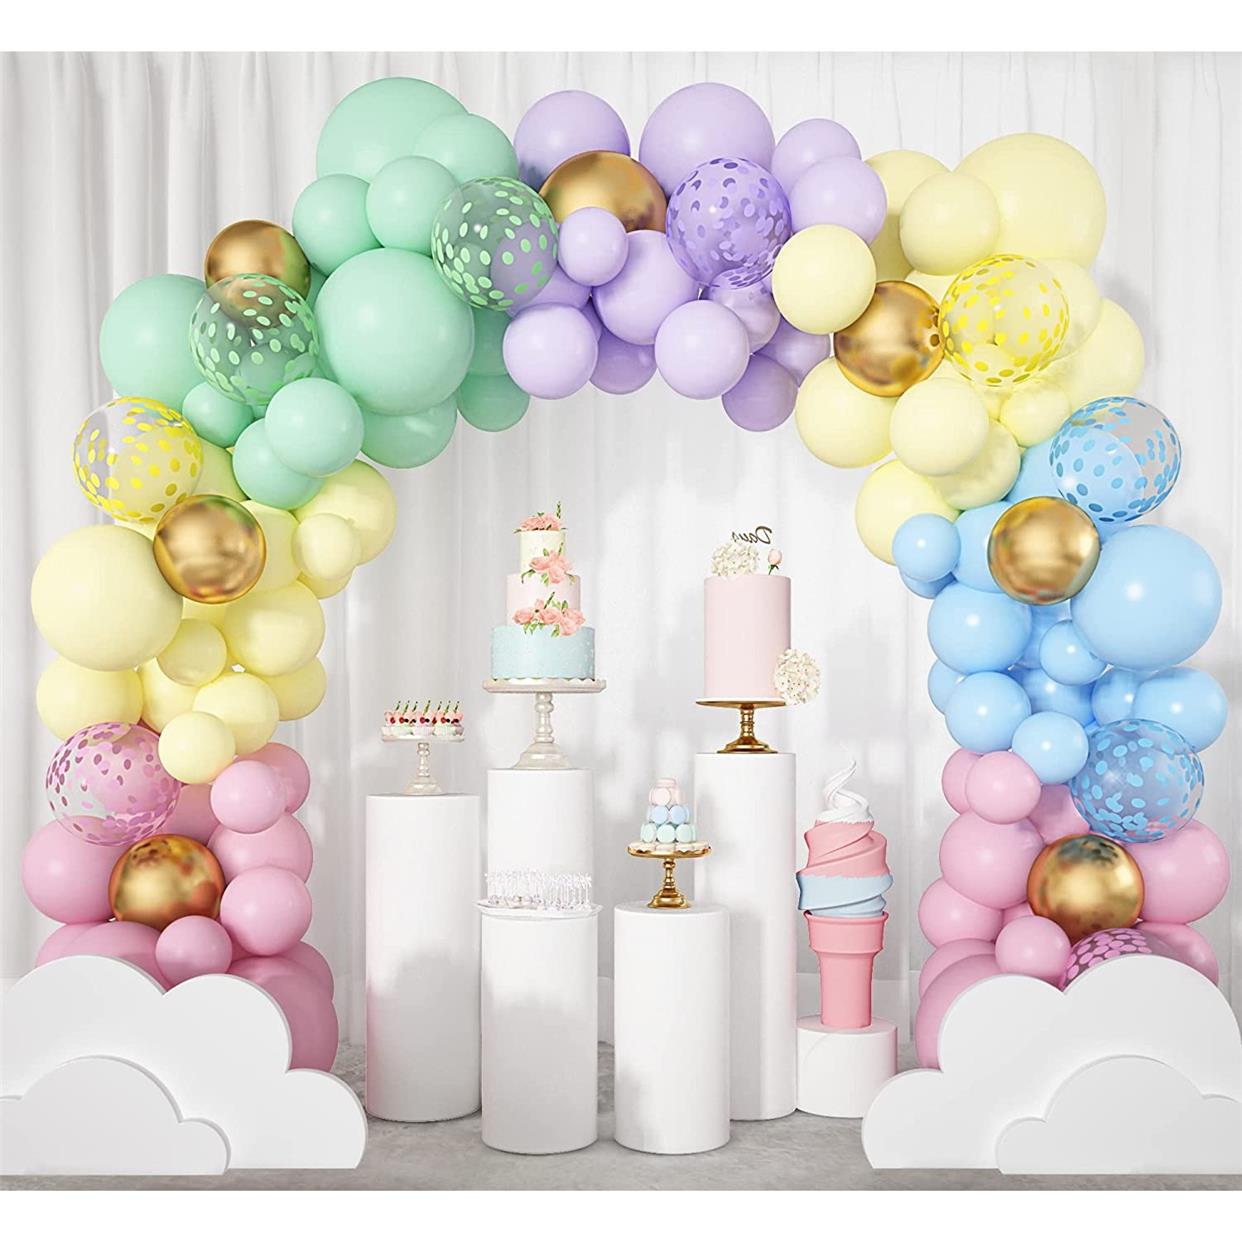 生日布置男孩童装饰女儿家里2两岁气球套装主题派对活动婚庆结婚